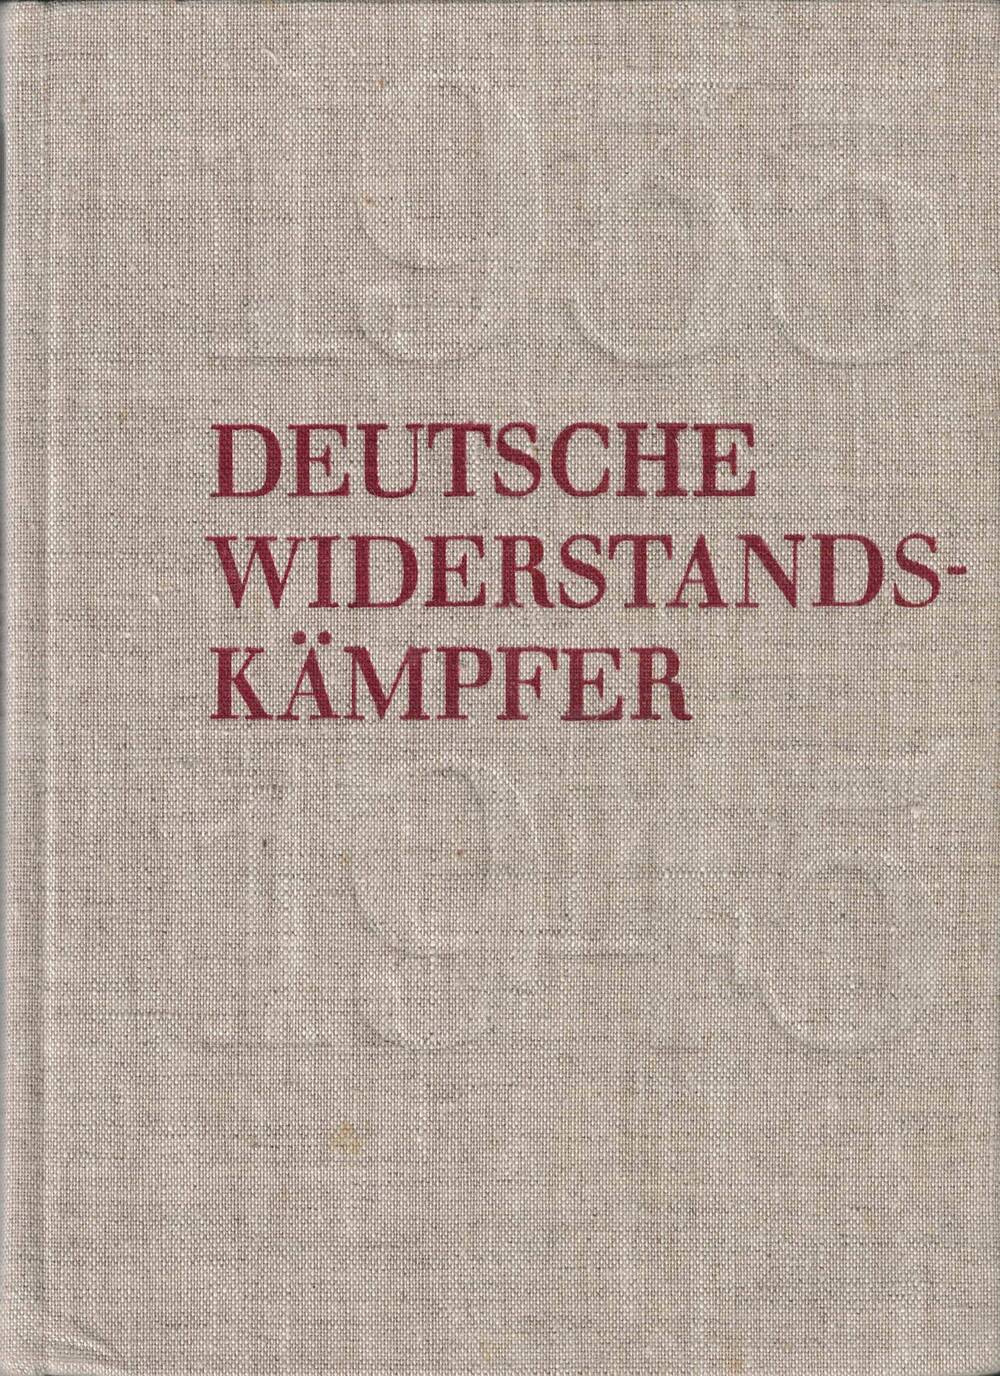 Книга Deutsche Widerstands-kämpfer, Том 1, на немецком языке из личной библиотеки Героя Советского Союза Егорова Михаила Алексеевича.